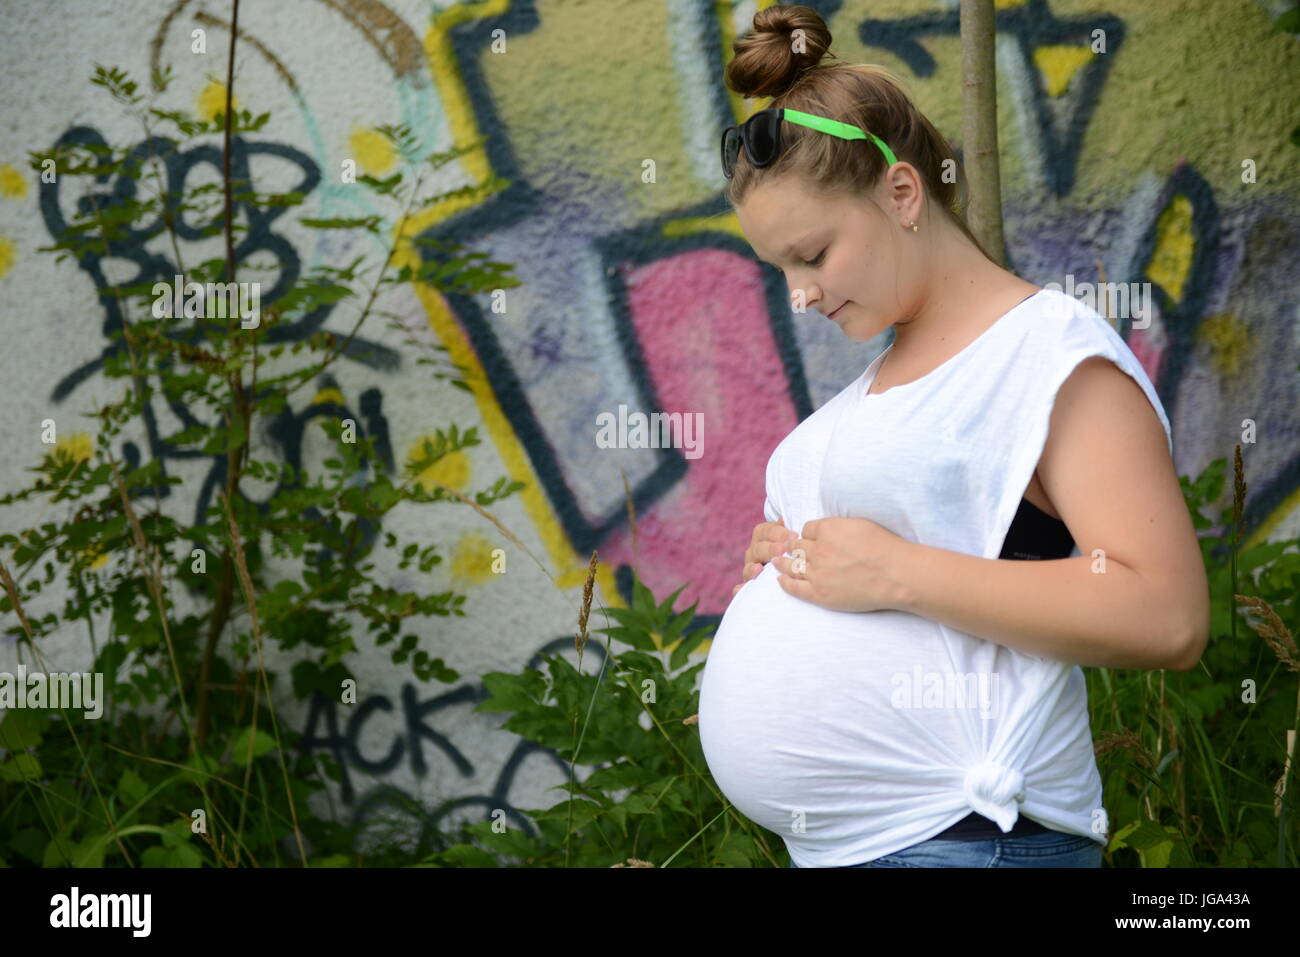 Pregnant Teenagers Pics Telegraph